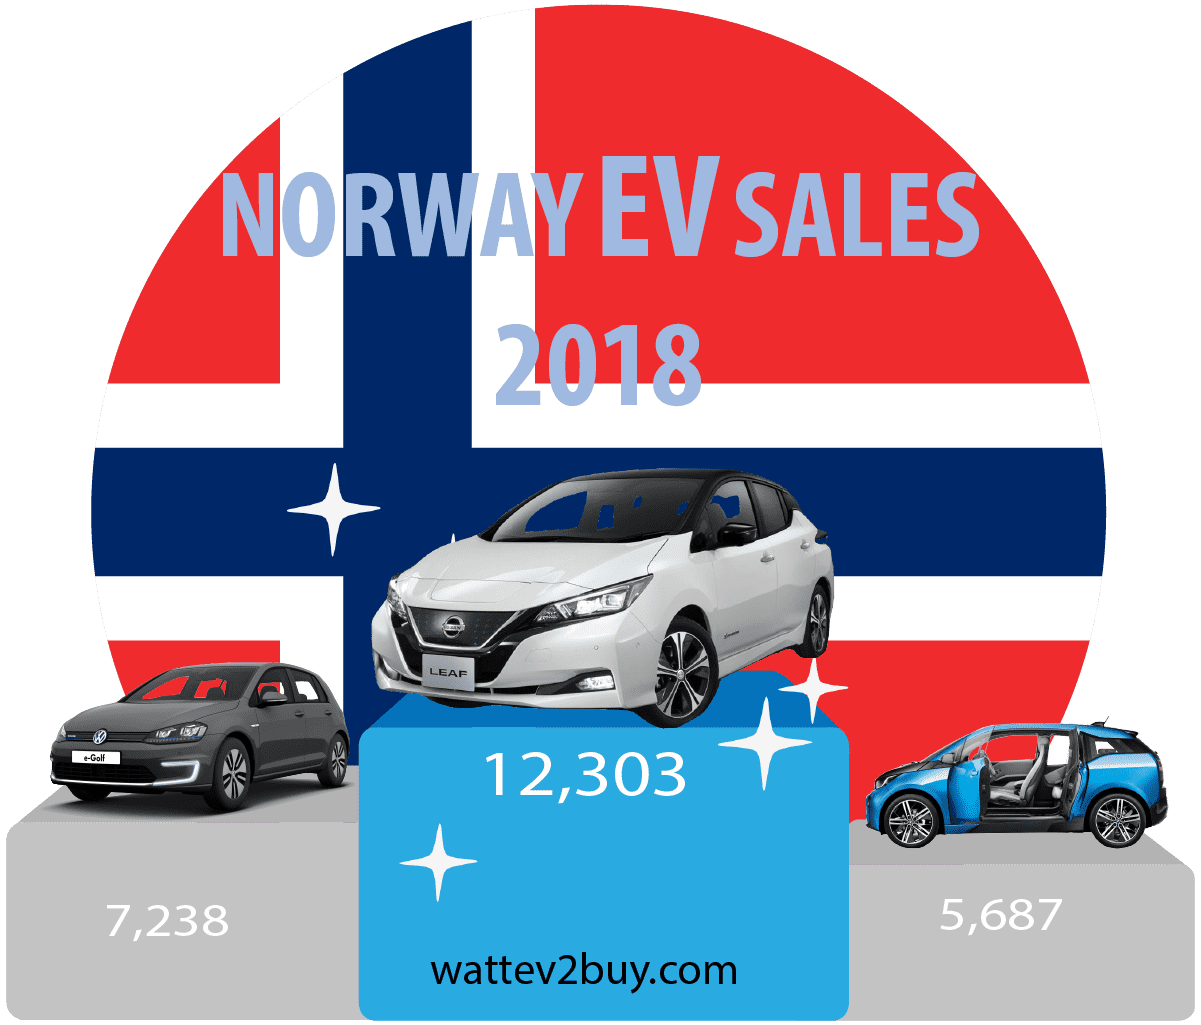 Norway-ev-sales-december-2018-ytd